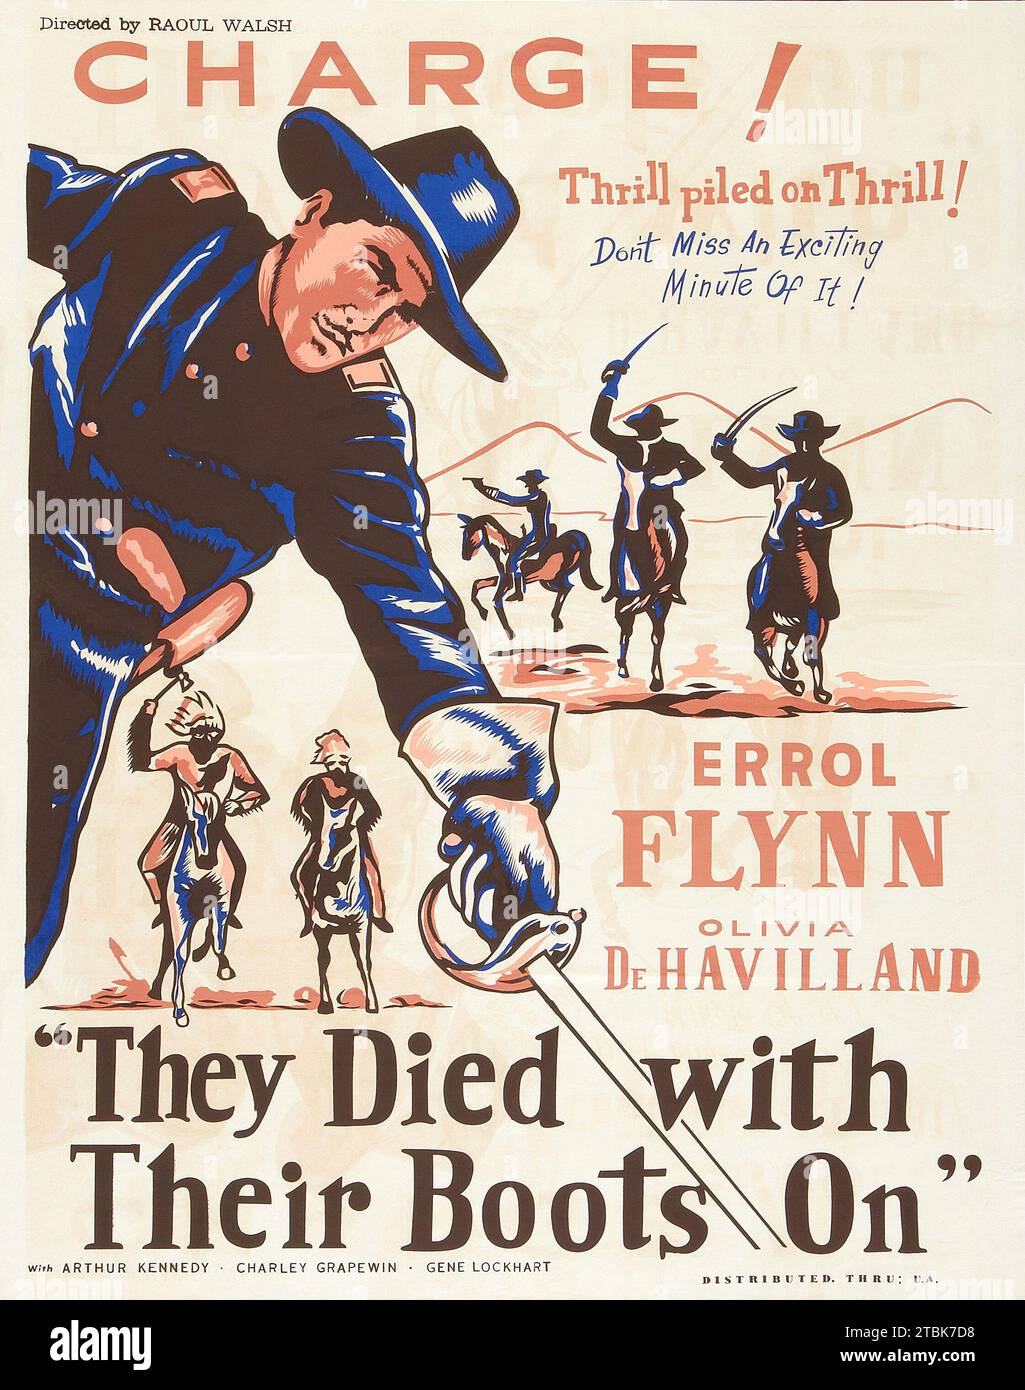 "L'arte dal poster ripubblicato nel 1960 al film "They Died with Their Boots On" con Errol Flynn e Olivia DeHavilland." Foto Stock